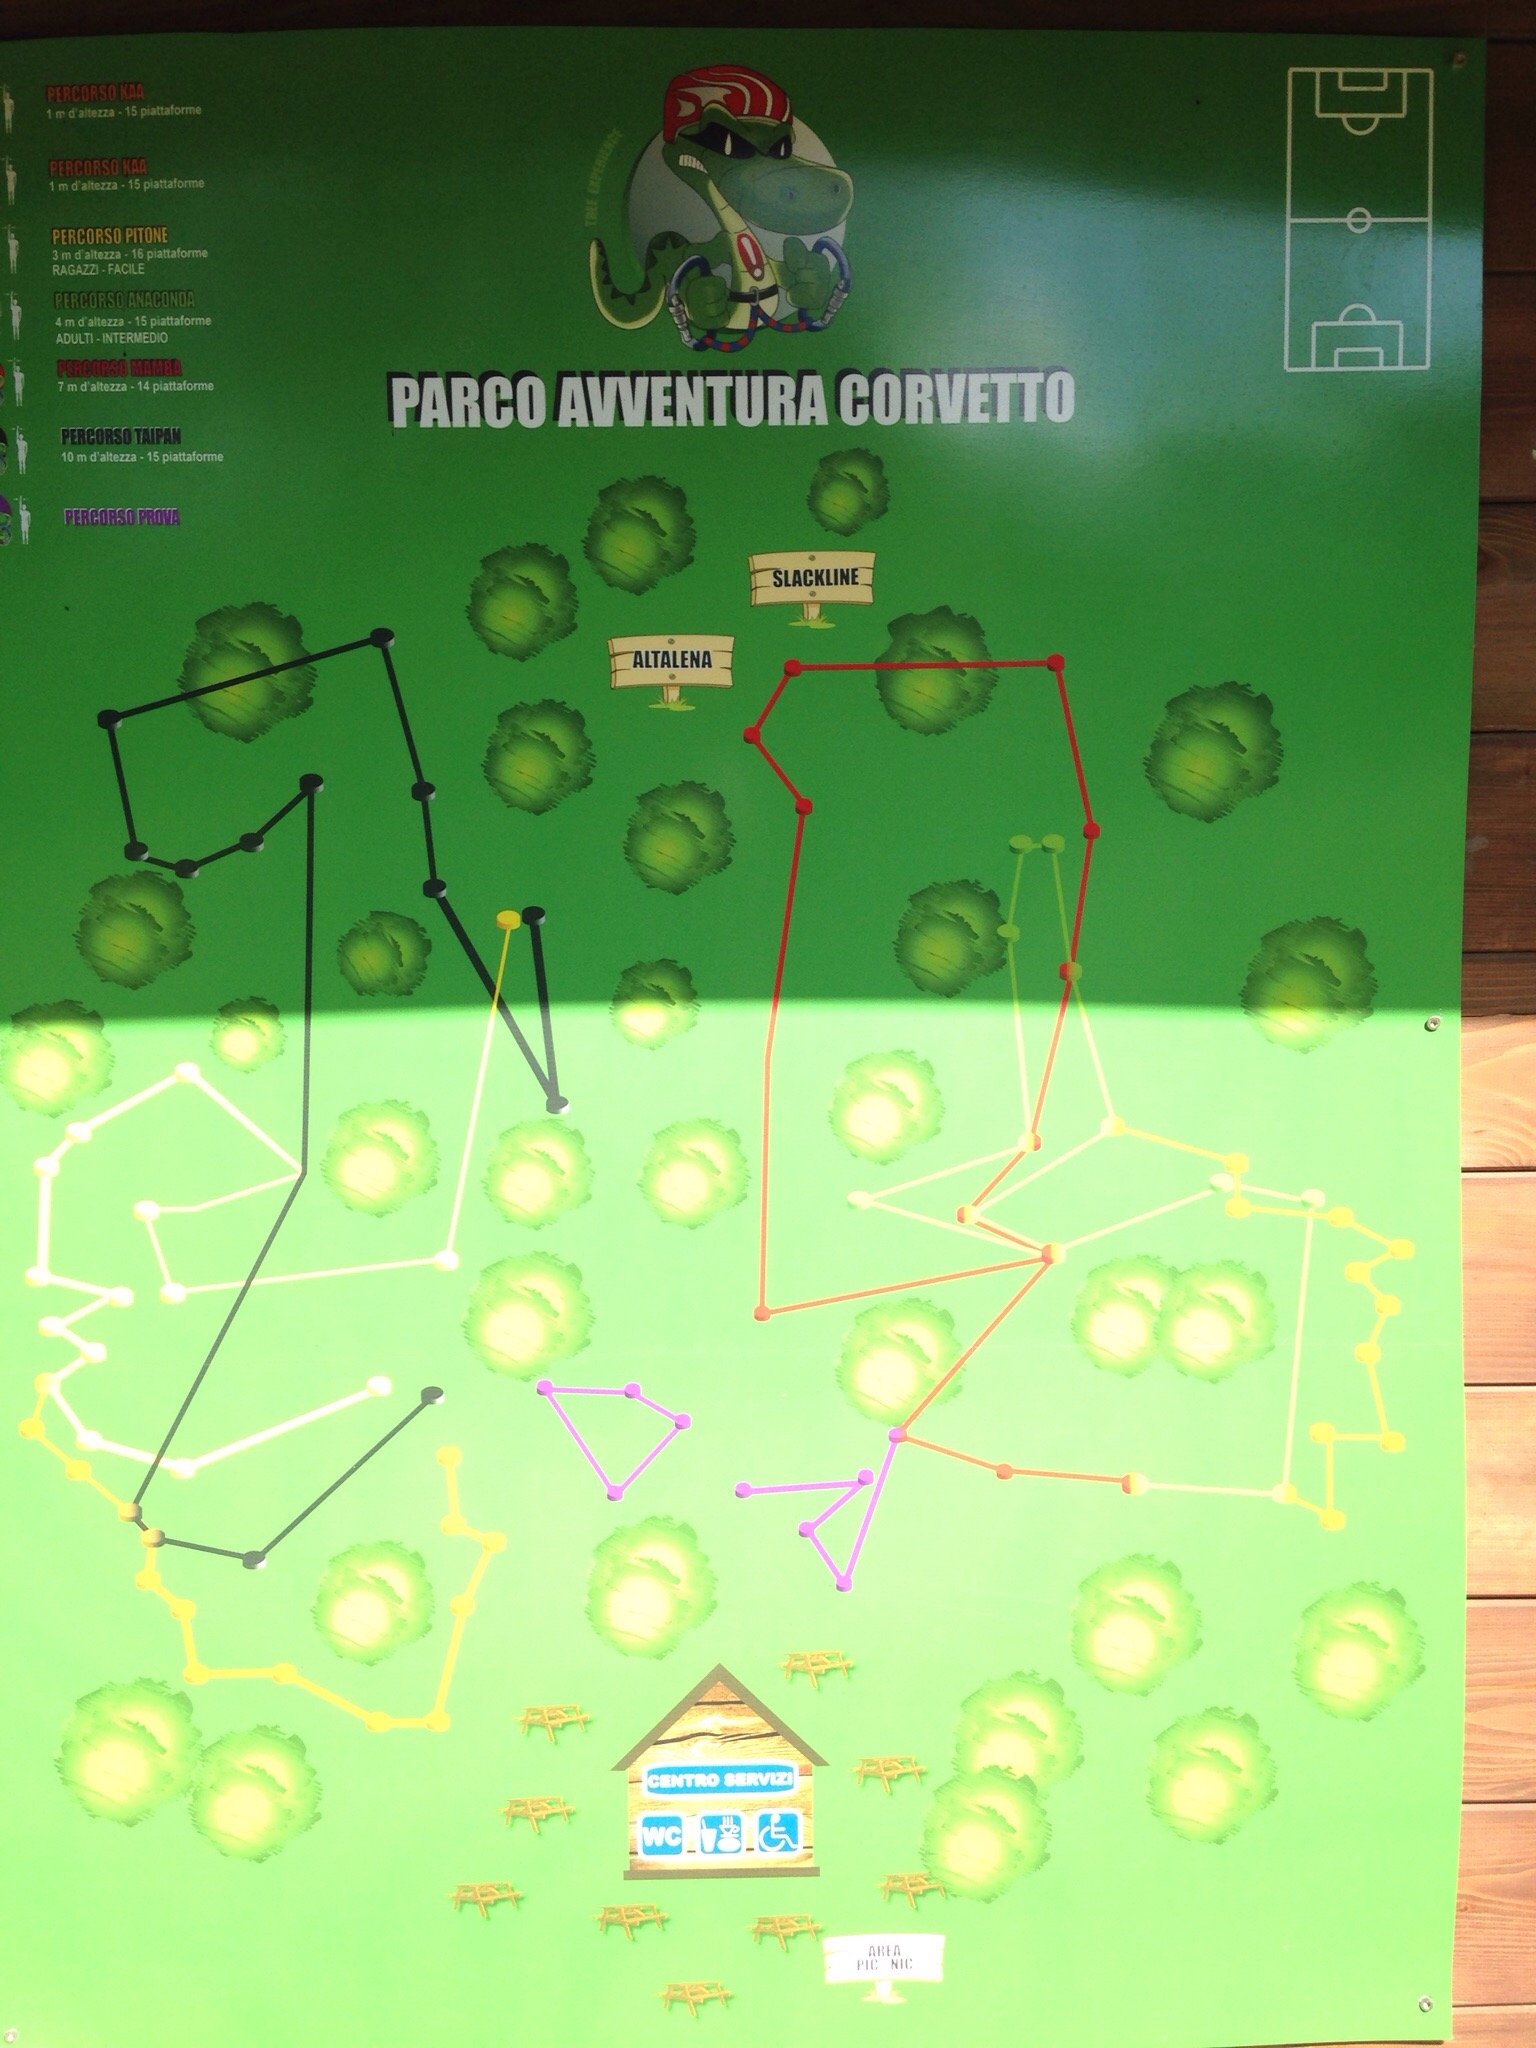 Parco Avventura Corvetto